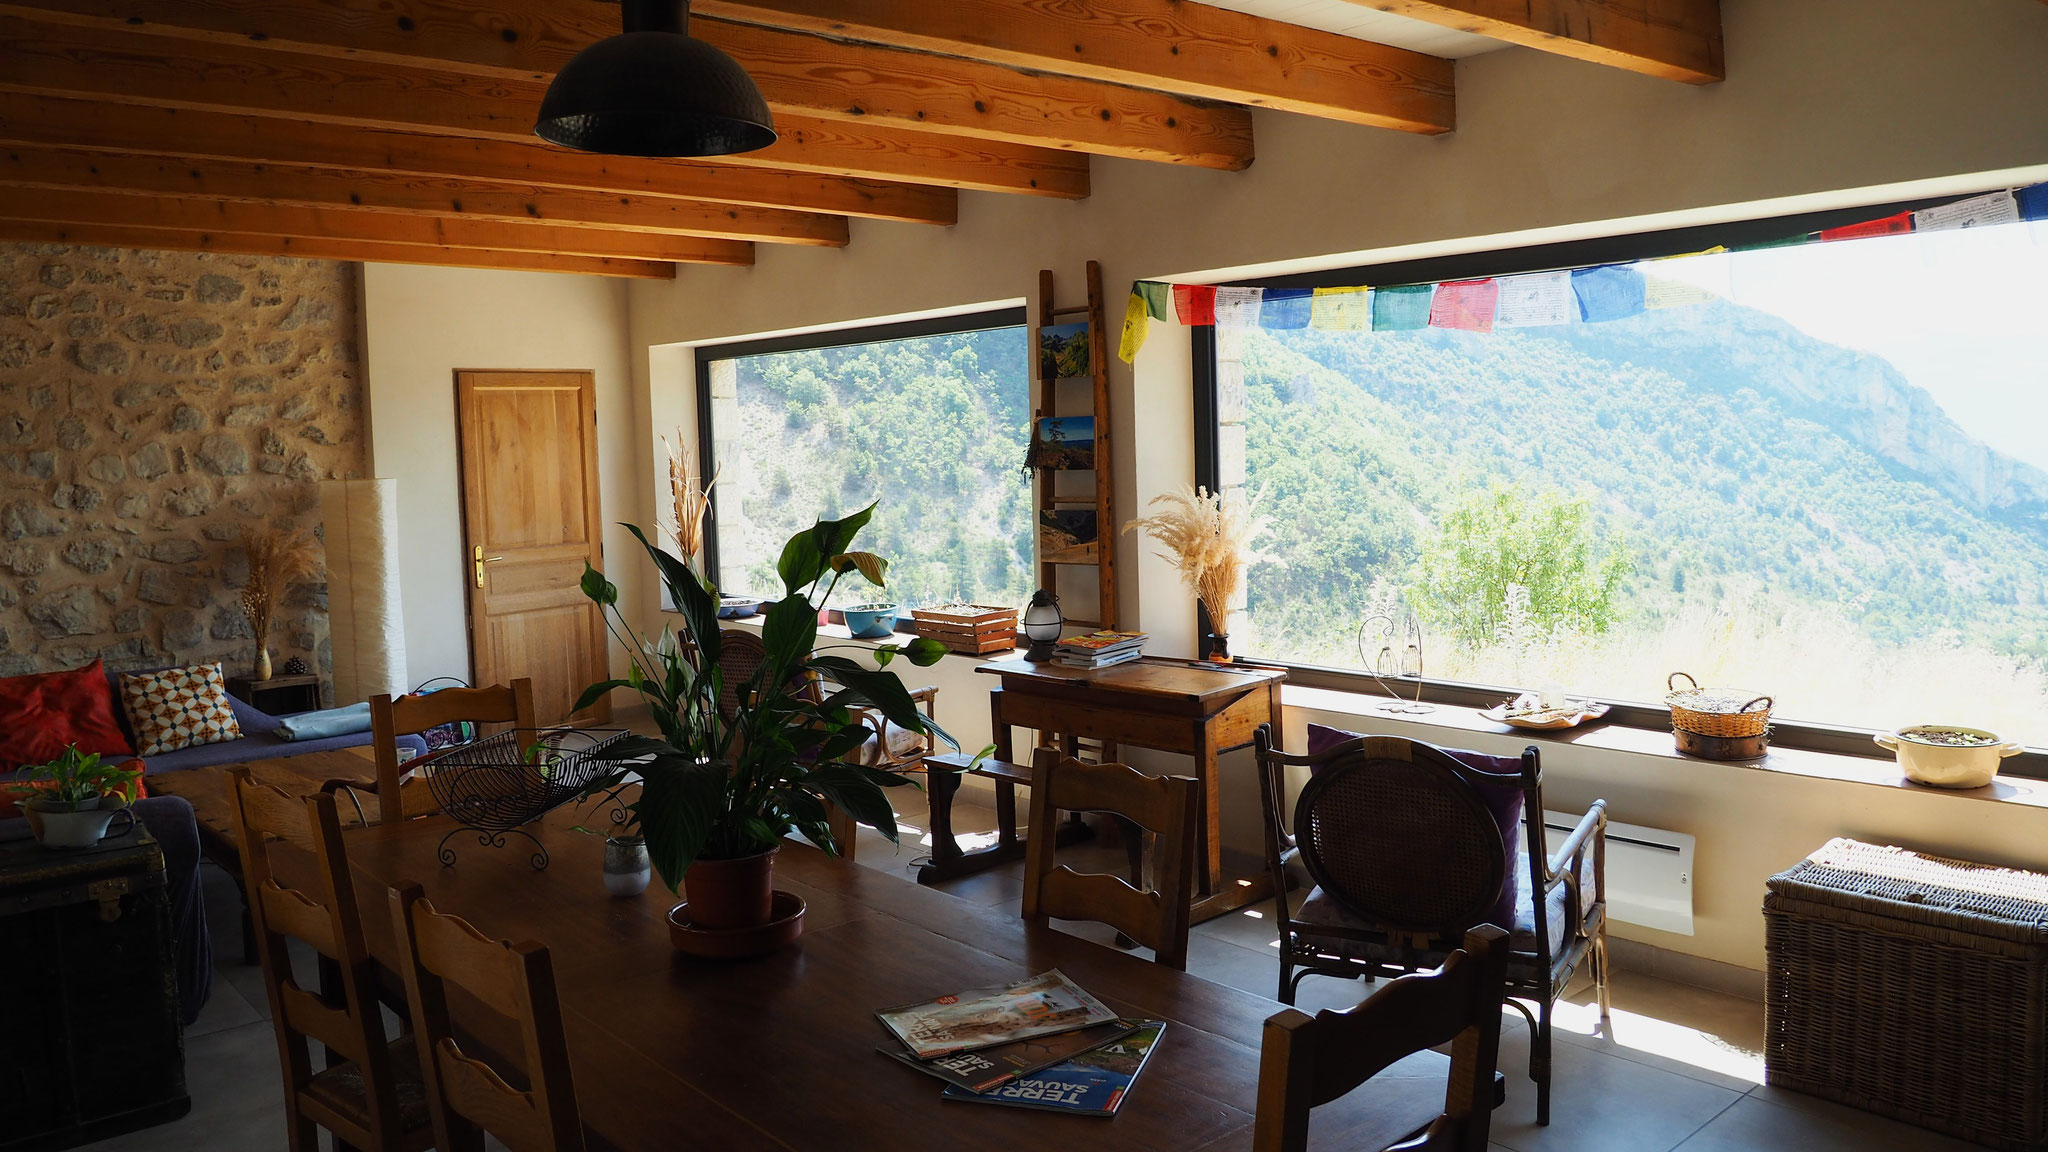 Le salle commune. Izon Nature : hébergements et table d'hôtes insolites et écoresponsables dans la Drôme provençale, trek dans la Méouge